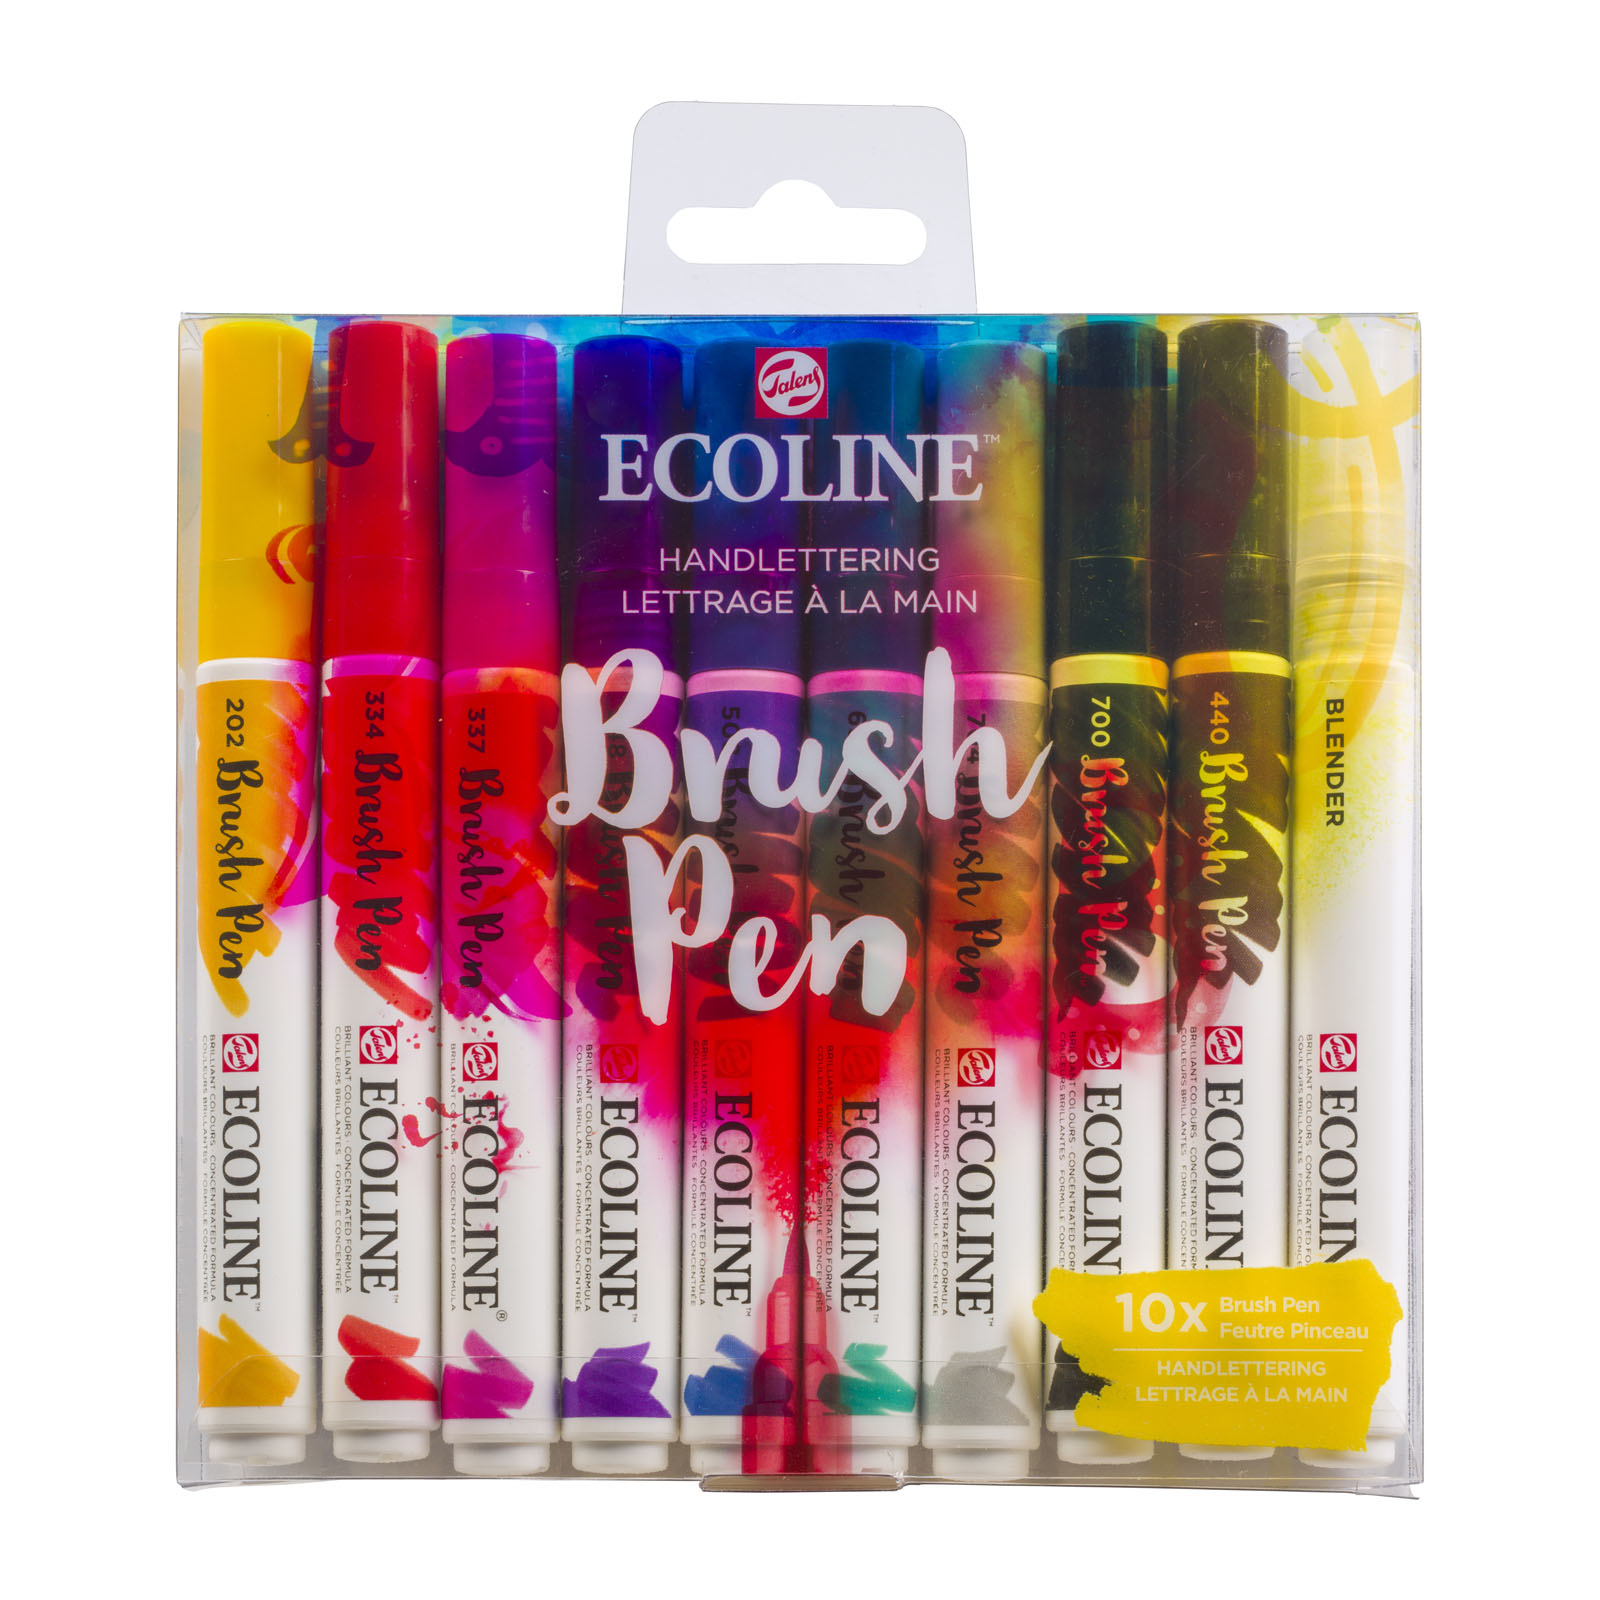 Ecoline • Estuche de Brush Pen 10 Handlettering